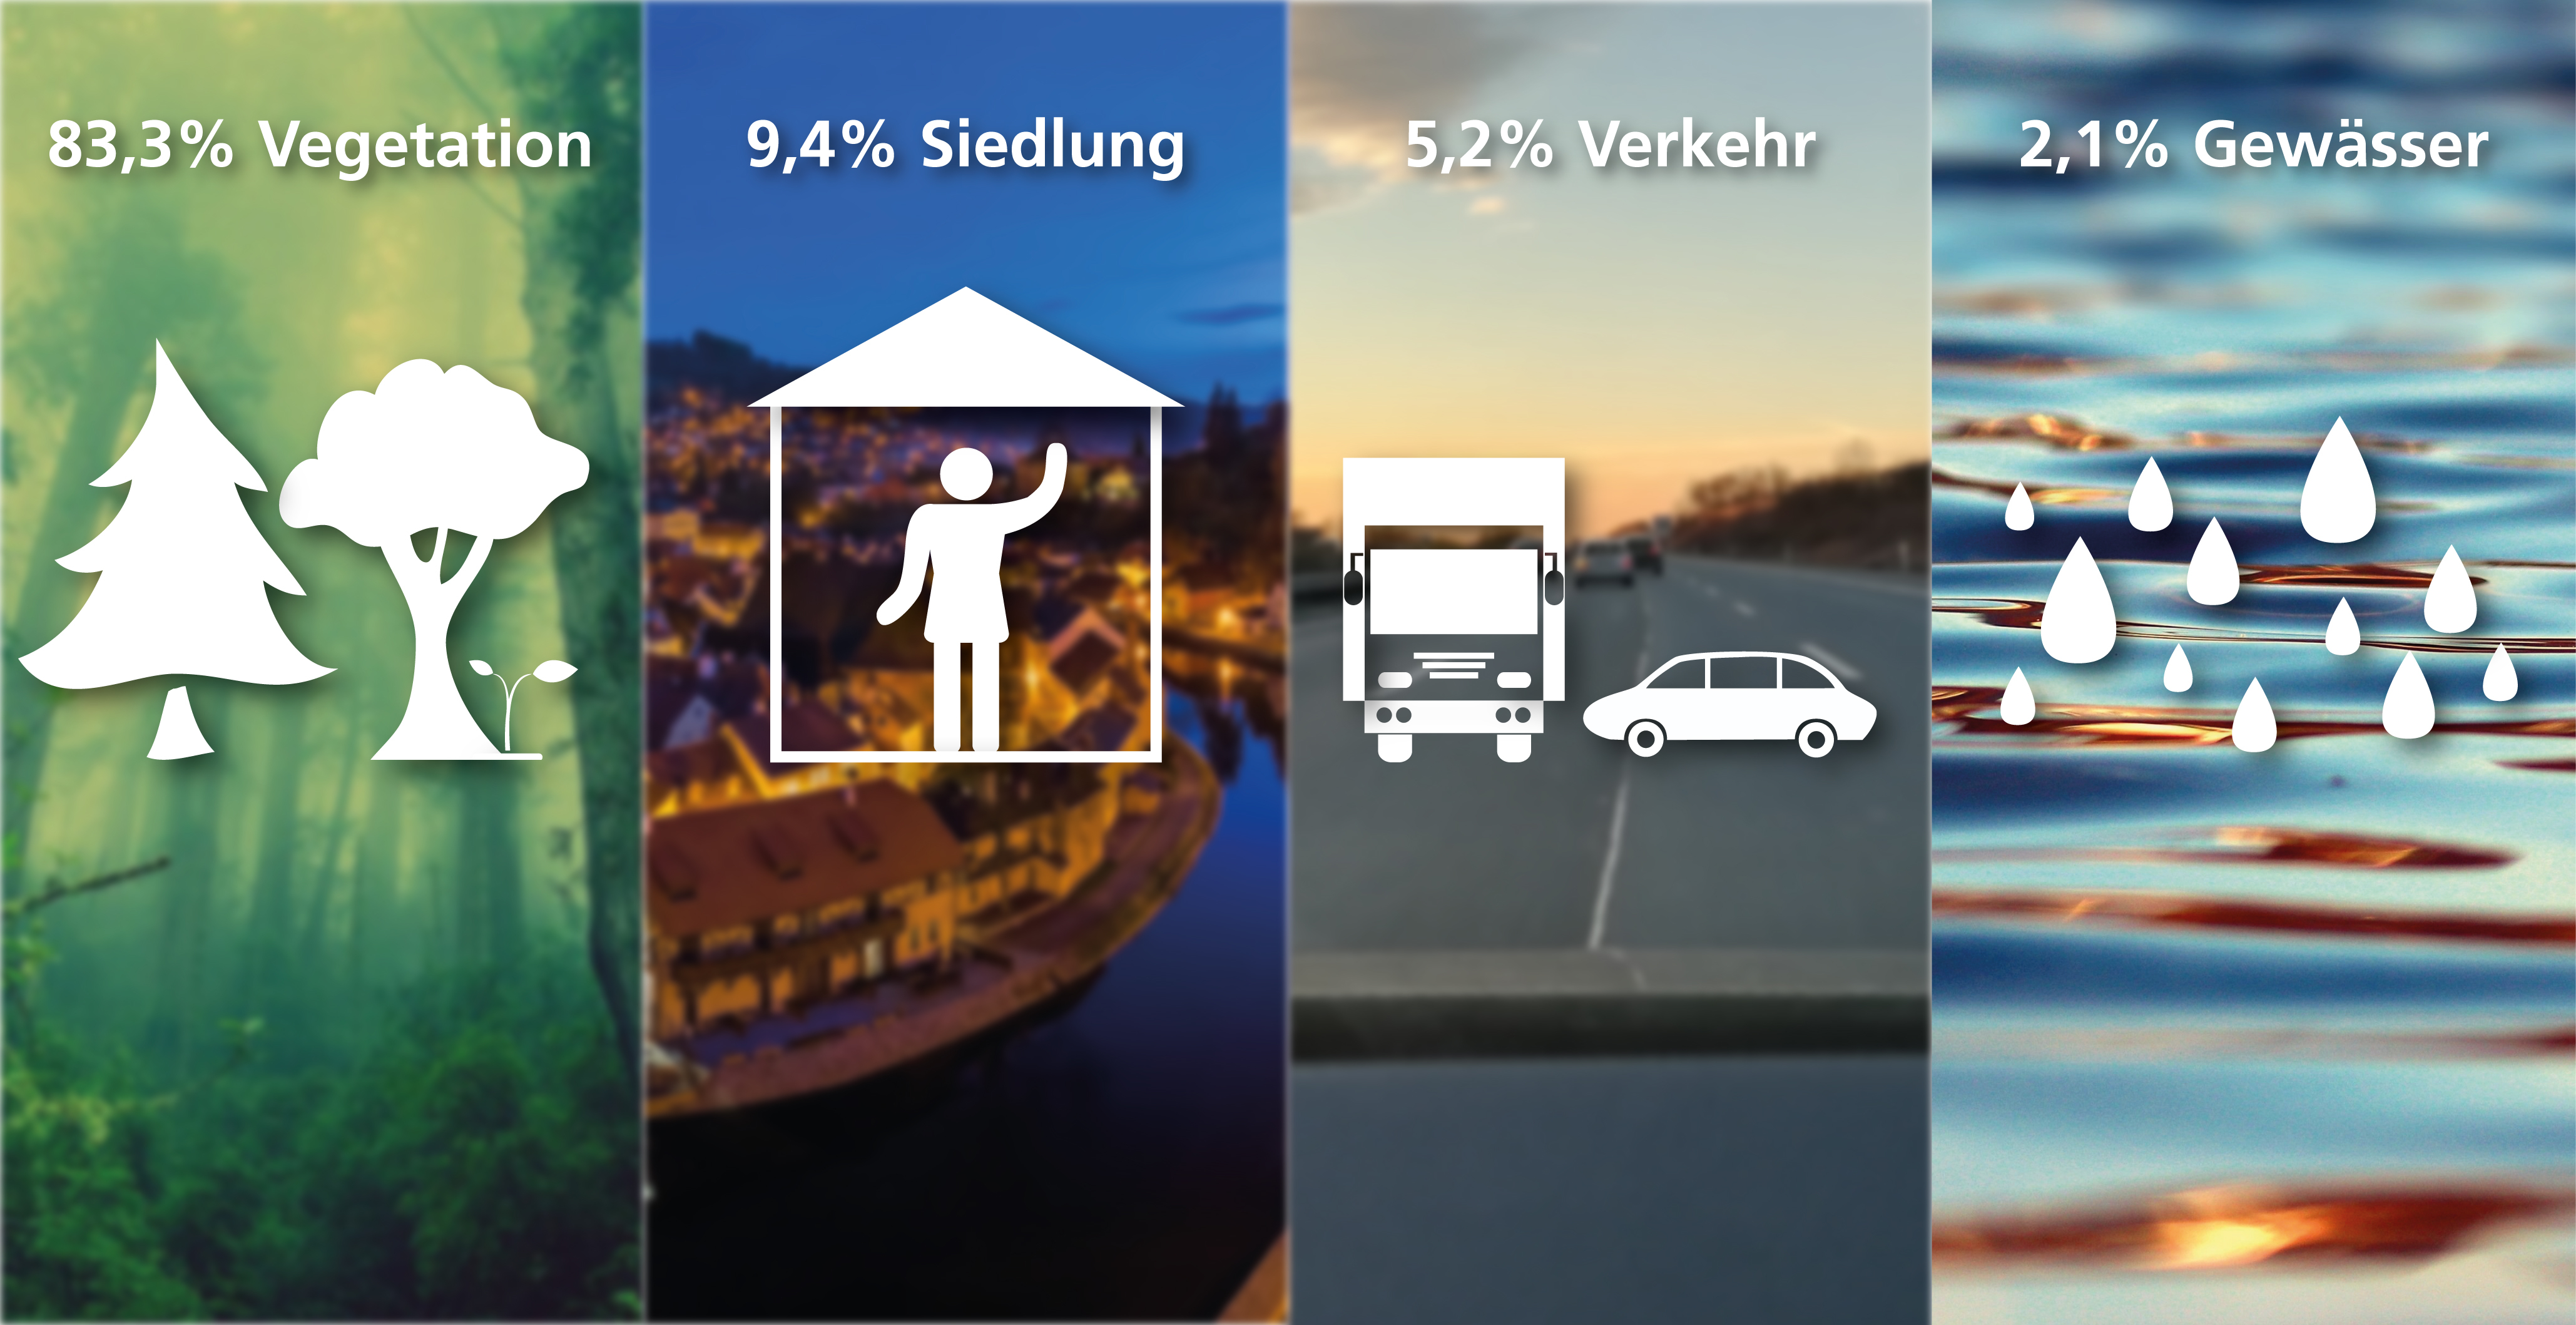 Die Flächennutzung Niedersachsens (83,3 % Vegetation, 9,4 % Siedlung, 5,2 % Verkehr, 2,1 % Gewässer) wird mit vier verschiedenen Bildern und Symbolen dargestellt.